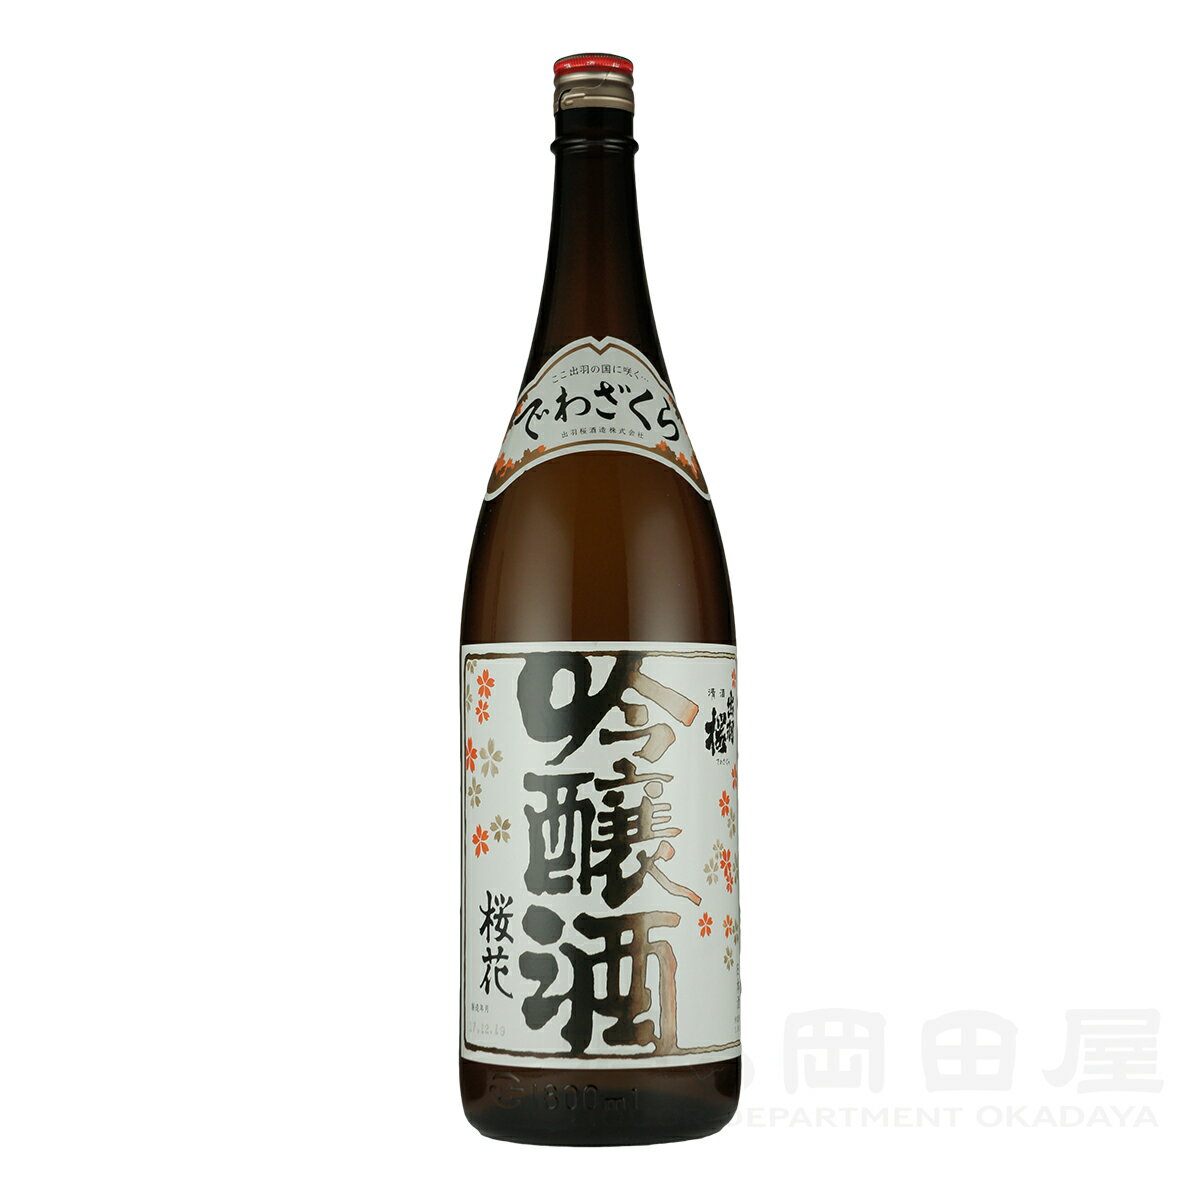 1980年の発売以来、皆様にご愛飲頂いている出羽桜の定番酒。「この酒で日本酒に目覚めた」とのお声を多く頂き、吟醸ブームを切り開きました。フルーティーな吟醸香と爽快な味わいが評価され、「マックスファクター化粧品“SK-II”の香りサンプル」「英国最古のワイン商で王室御用達のBB&R社が初めて扱う日本酒」に採用されるなど、今なお進化を続けています。 精米歩合：50% アルコール度：15度 使用米：国産米 山形県 出羽桜酒造